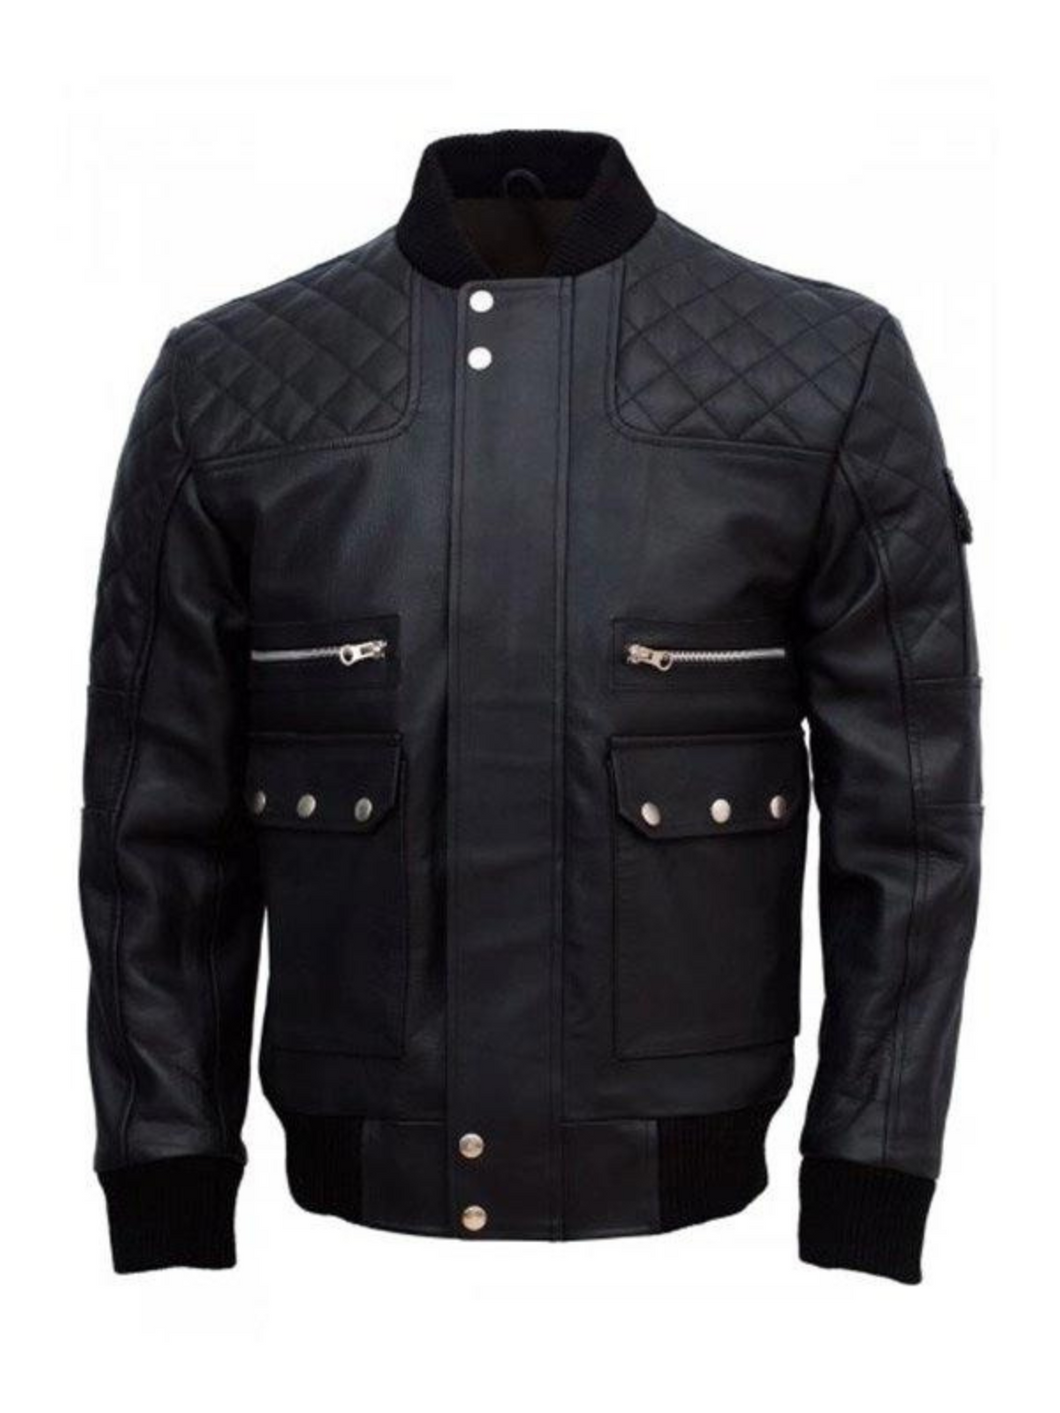 Men’s Black Work Wear Leather Jacket